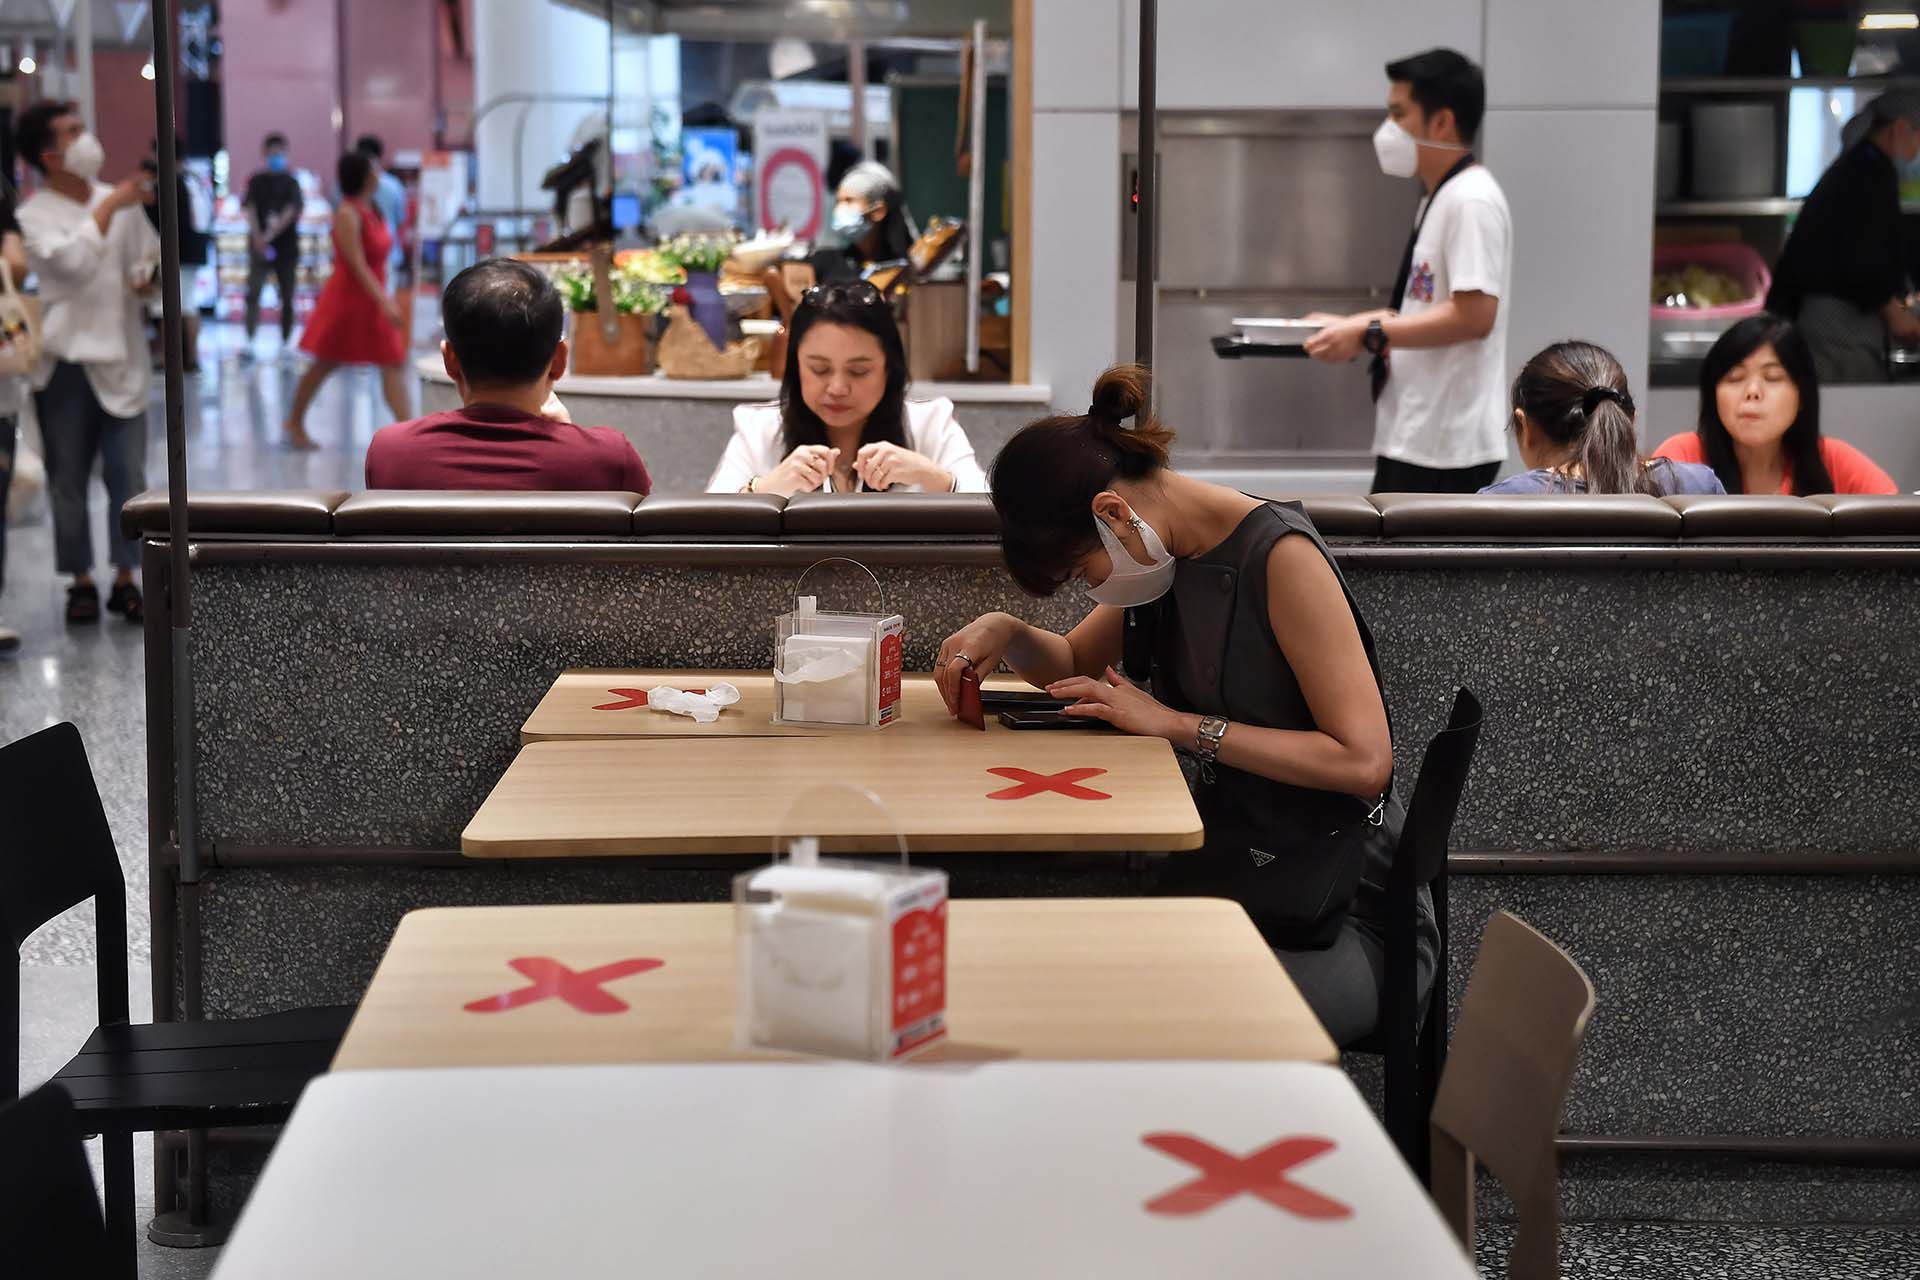 Las cruces señalan los lugares a evitar para mantener la distancia social en el patio de comidas de un centro comercial en Bangkok. 